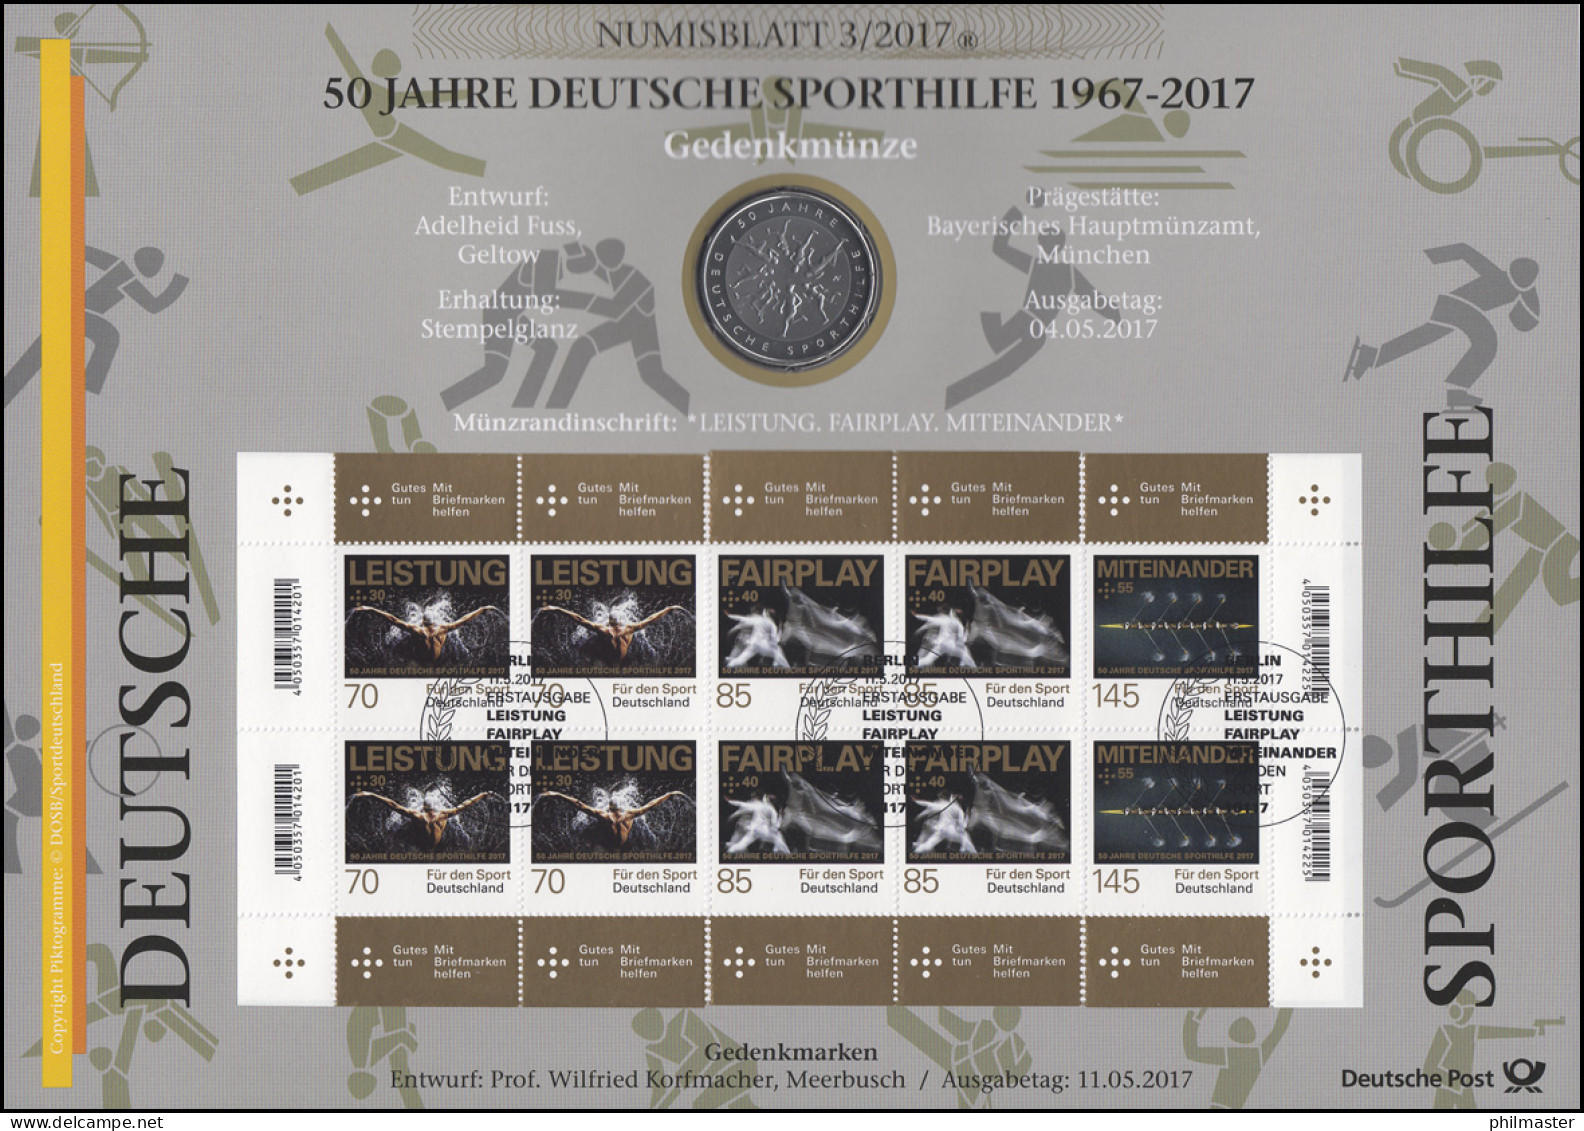 3307-3309 50 Jahre Deutsche Sporthilfe - Numisblatt 3/2017 - Numismatische Enveloppen